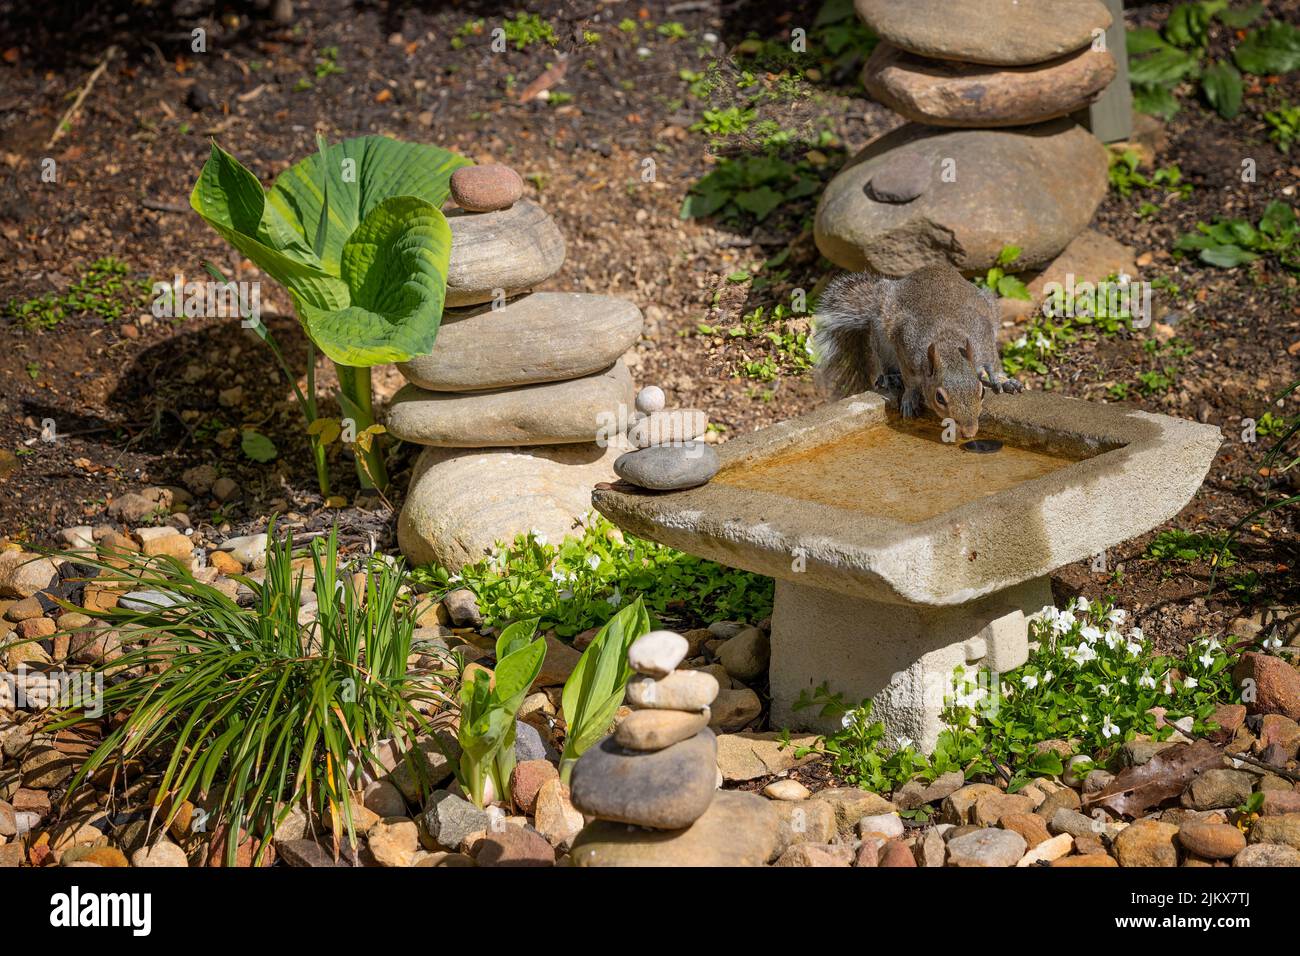 Una ardilla gris apaga su sed de un pequeño birdbath en un jardín. Foto de stock